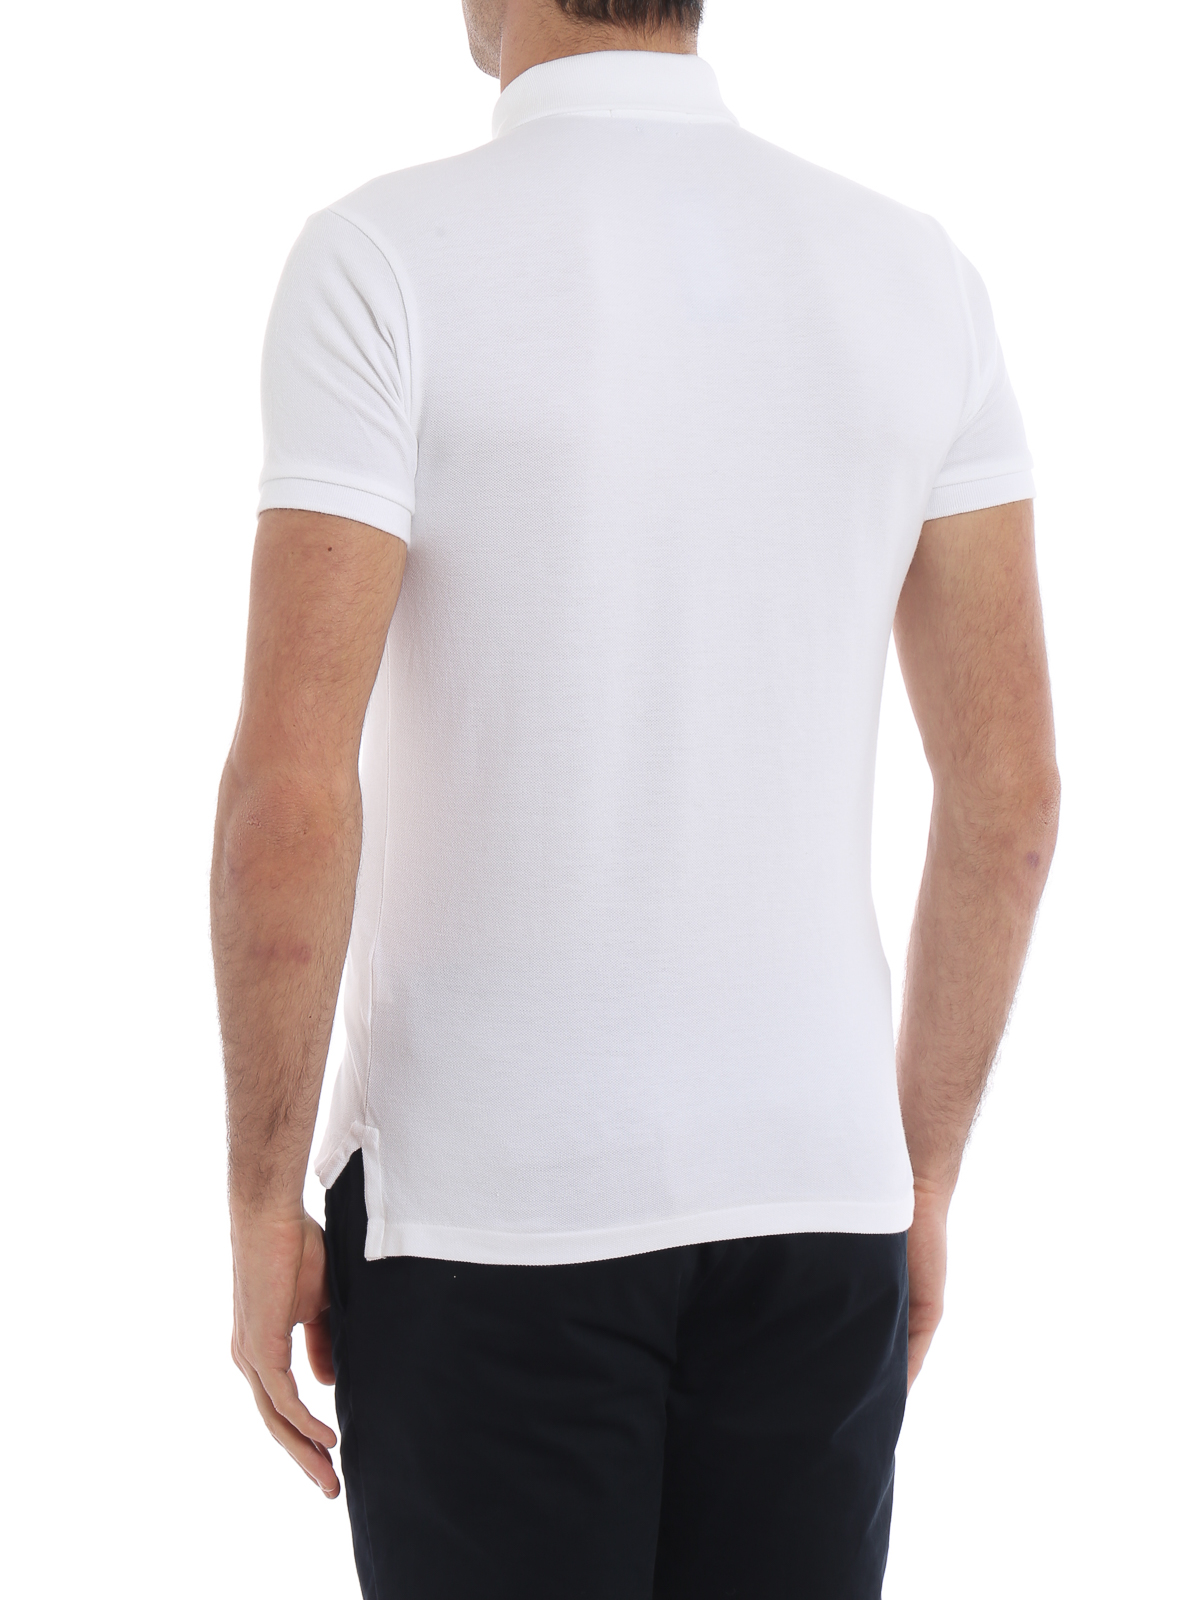 ポロシャツ Polo Ralph Lauren - ポロシャツ - 白 - 710548797001